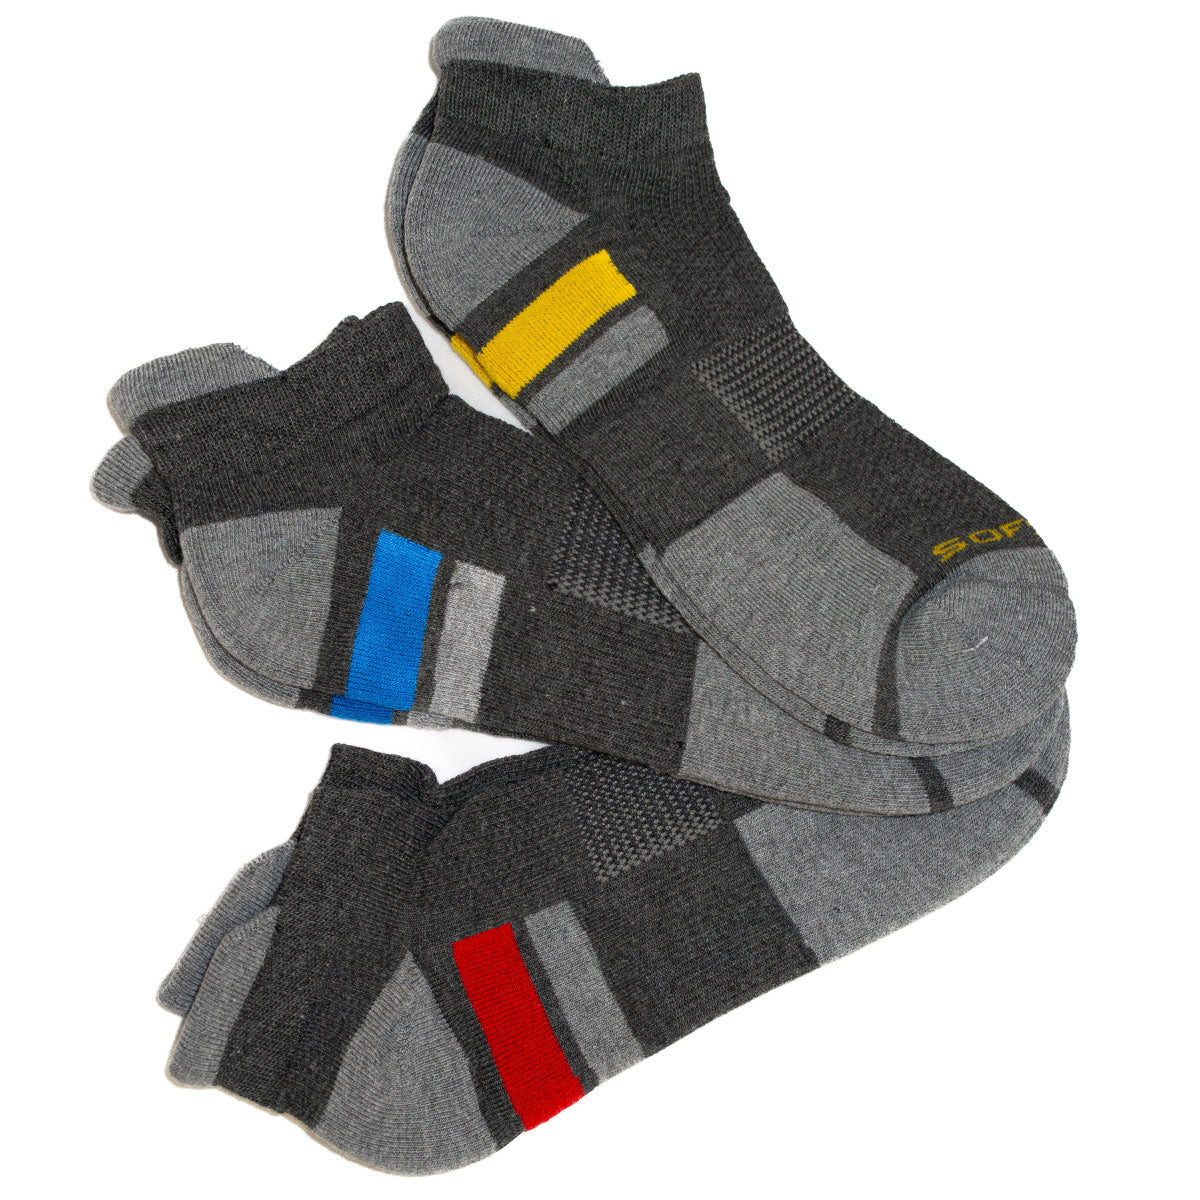 SofSole Multi Sport Low Cut Cushion Socks - Mens - Grey/Red